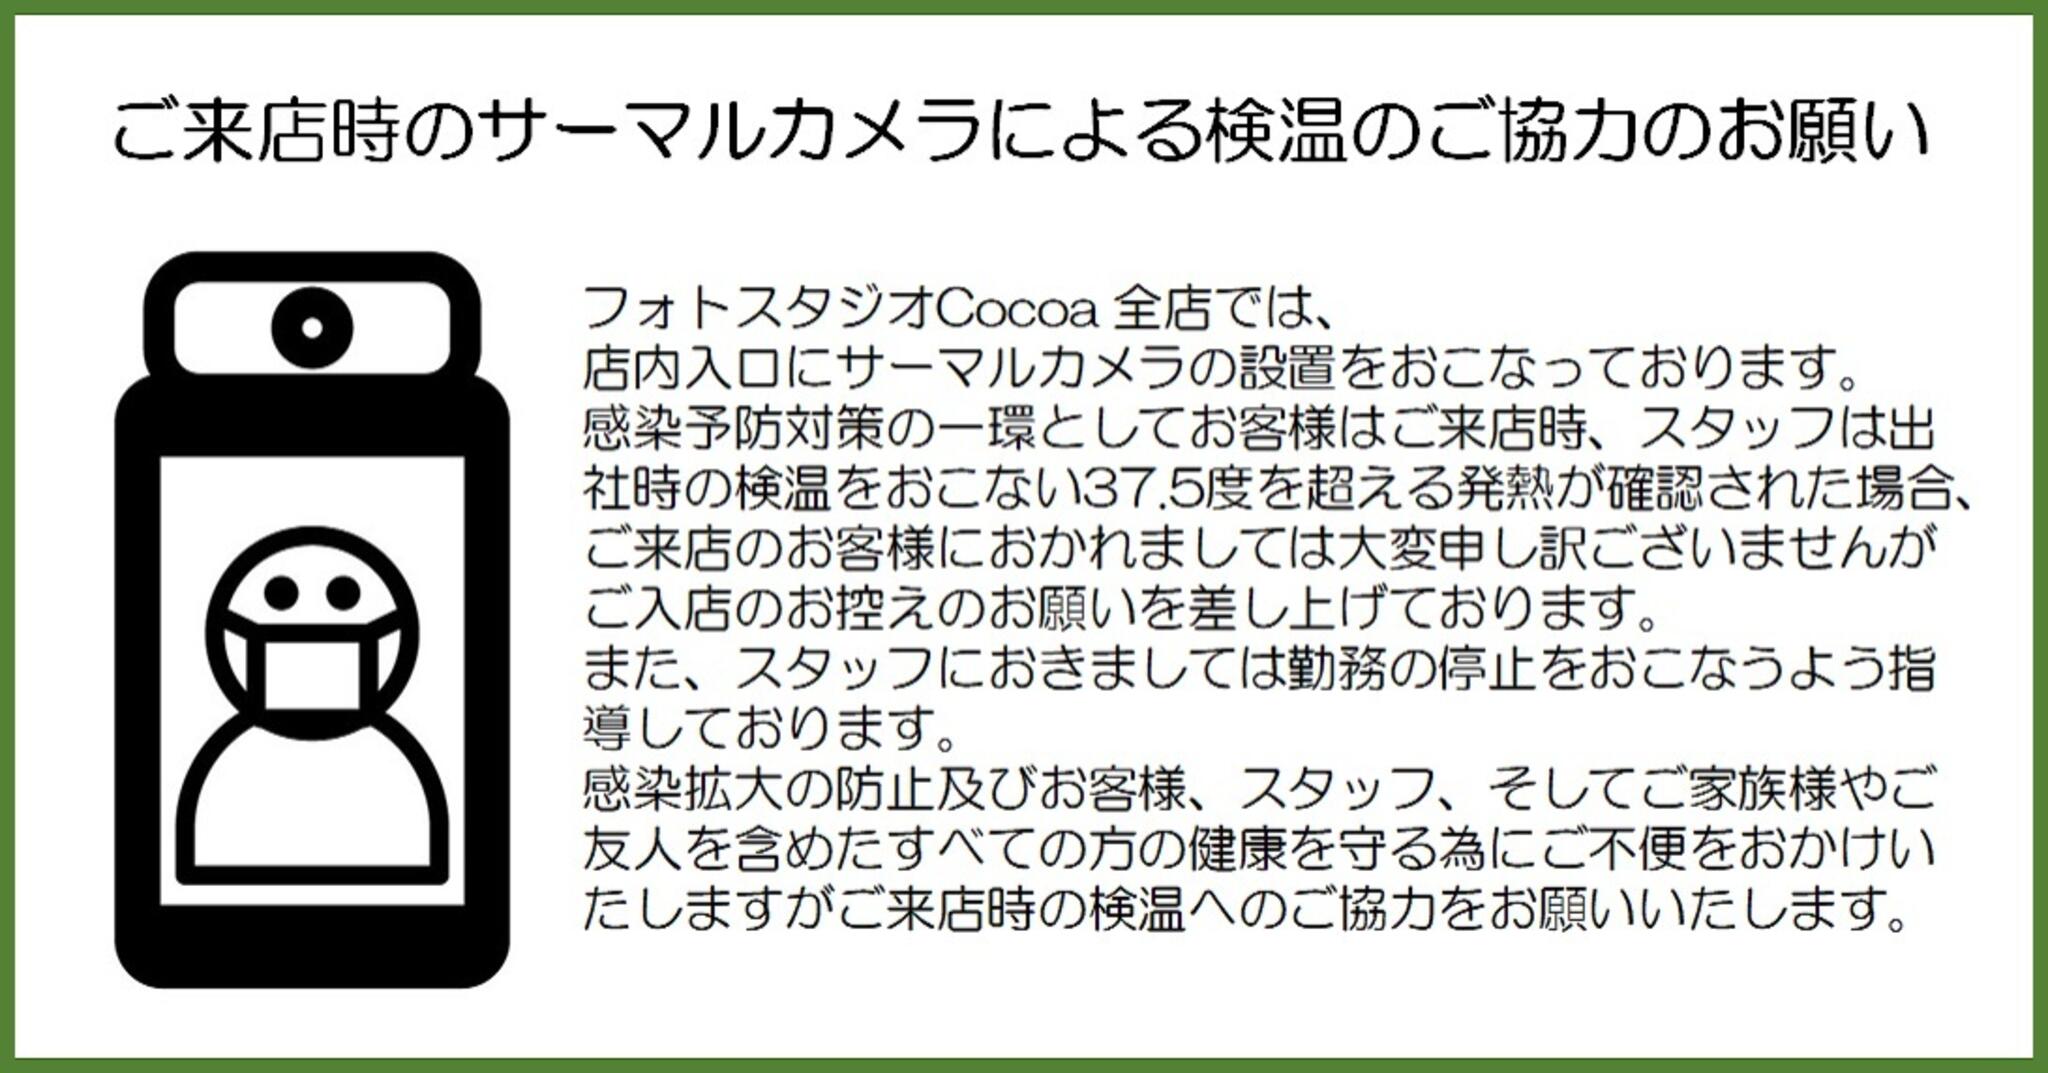 フォトスタジオCocoa横浜港北店からのお知らせ(ご来店時のサーマルカメラによる検温のご協力のお願い )に関する写真